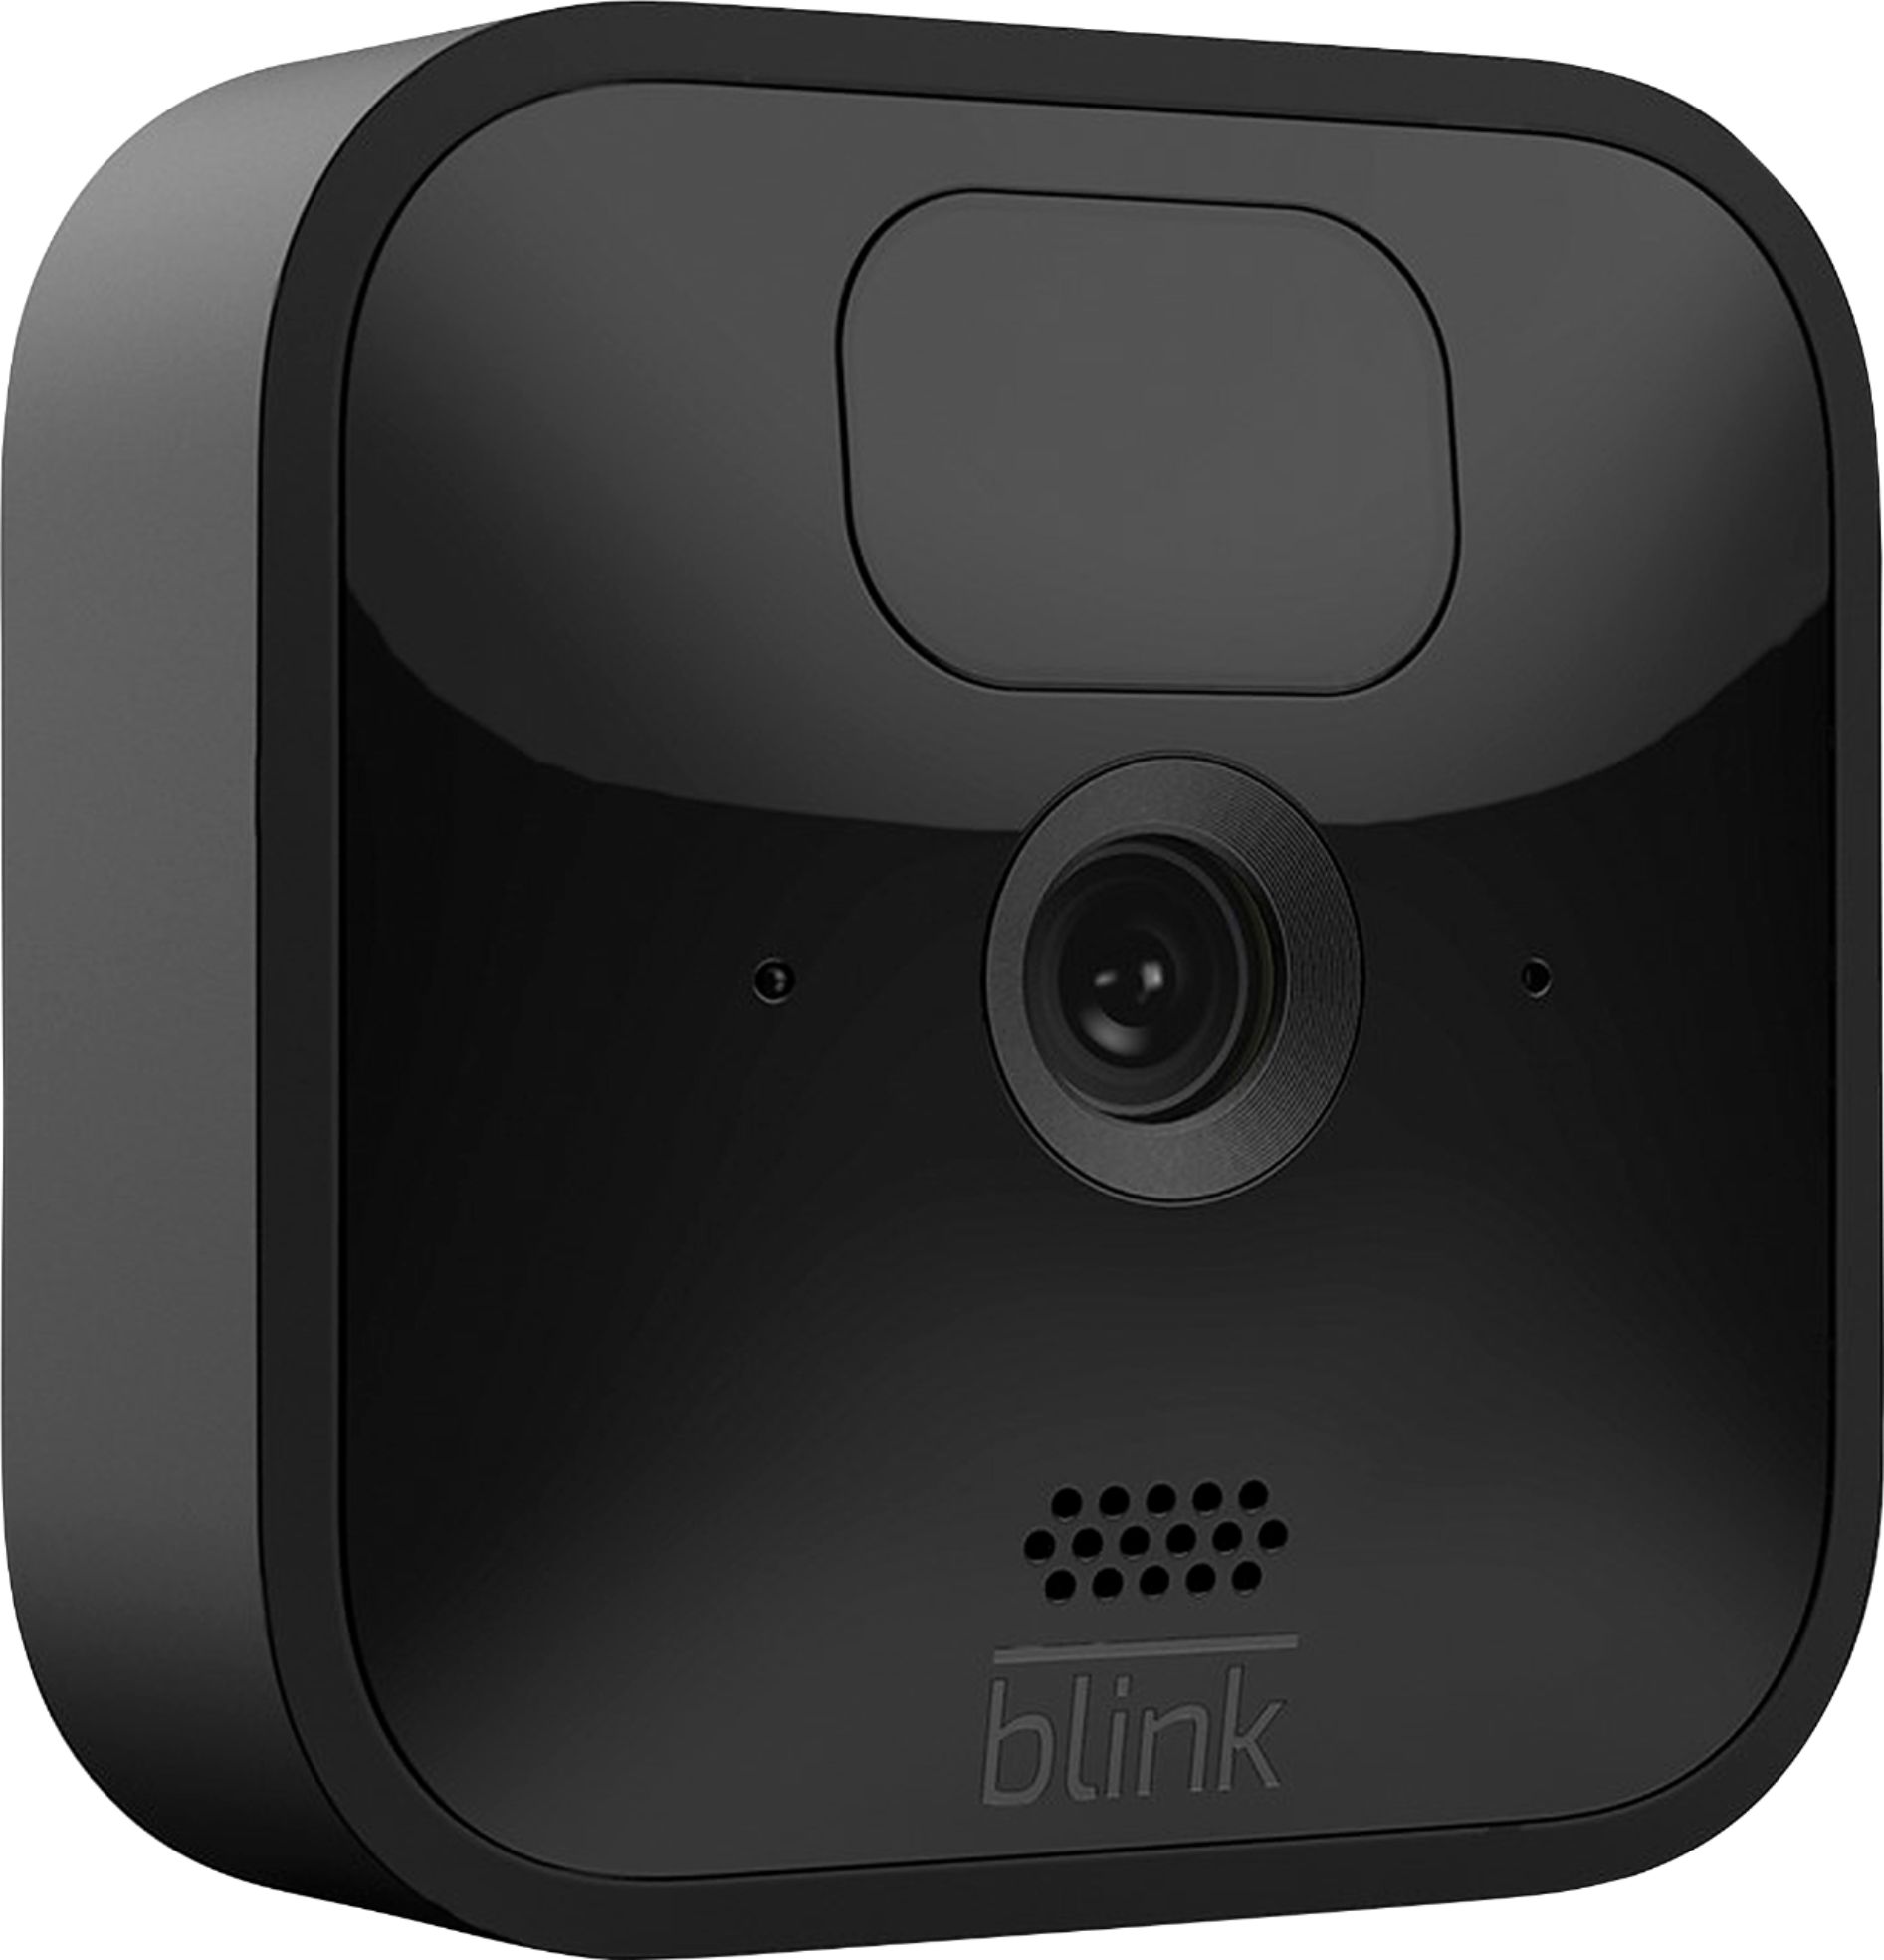 Security camera deal: Get 2 Blink indoor cameras for $30